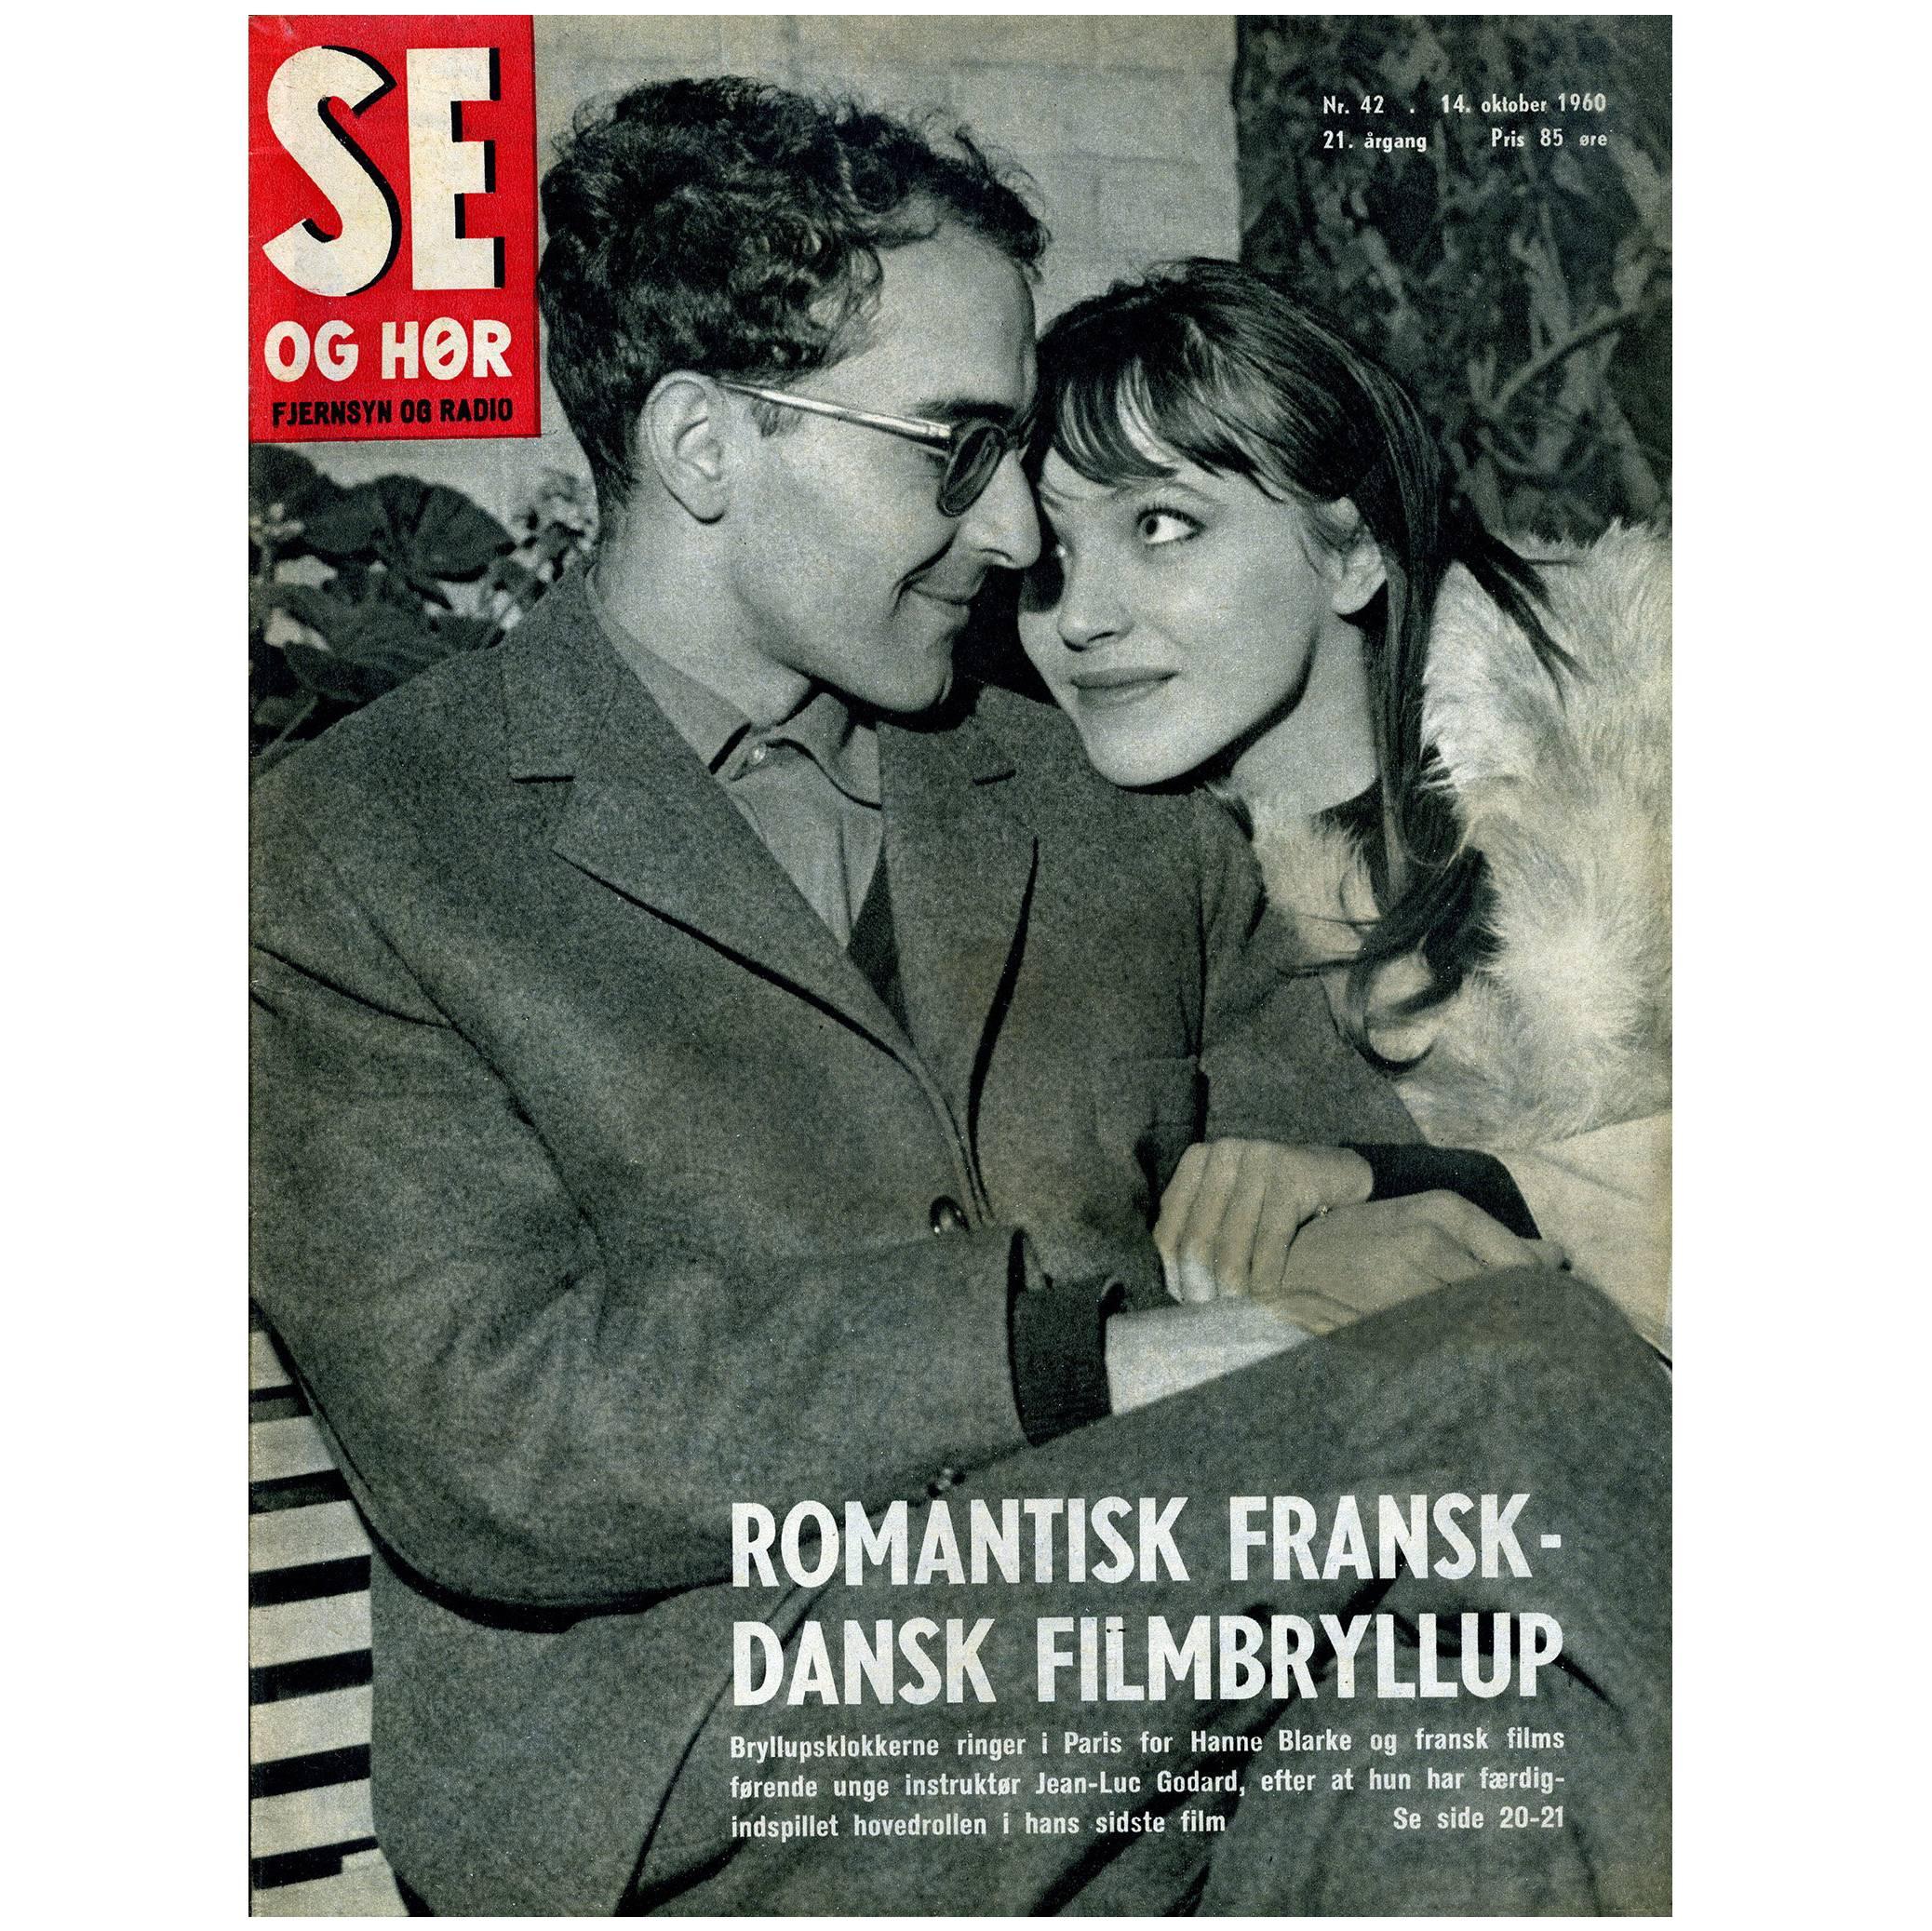 Jean Luc Godard & Anna Karina 1960s Se Og Hør (French New Wave) 